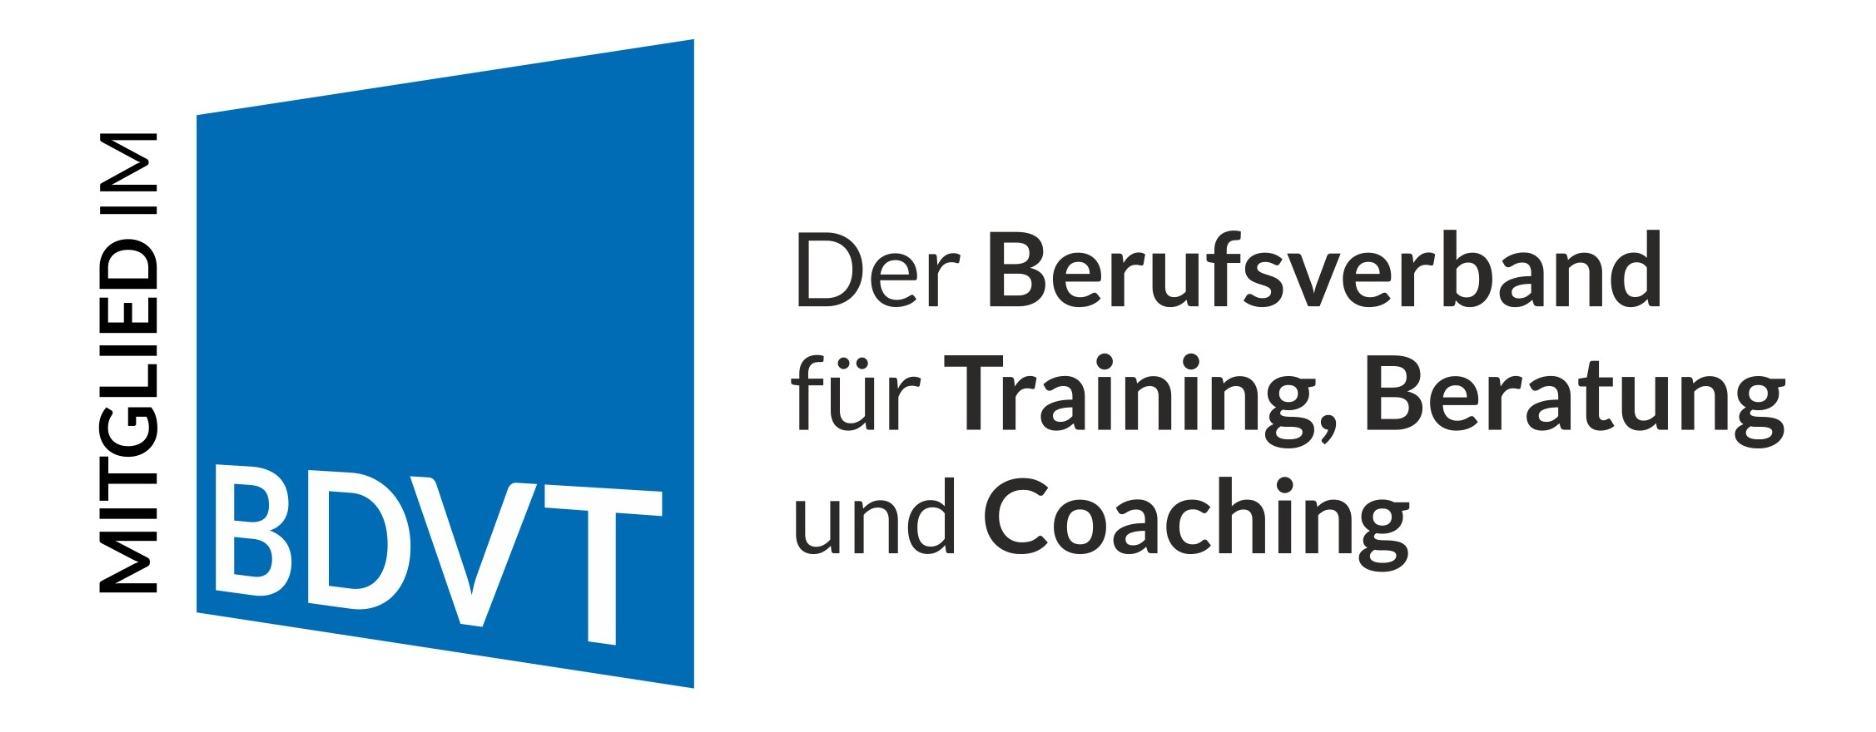 Berufsverband für Training, Beratung und Coaching_Mitglied_Logo